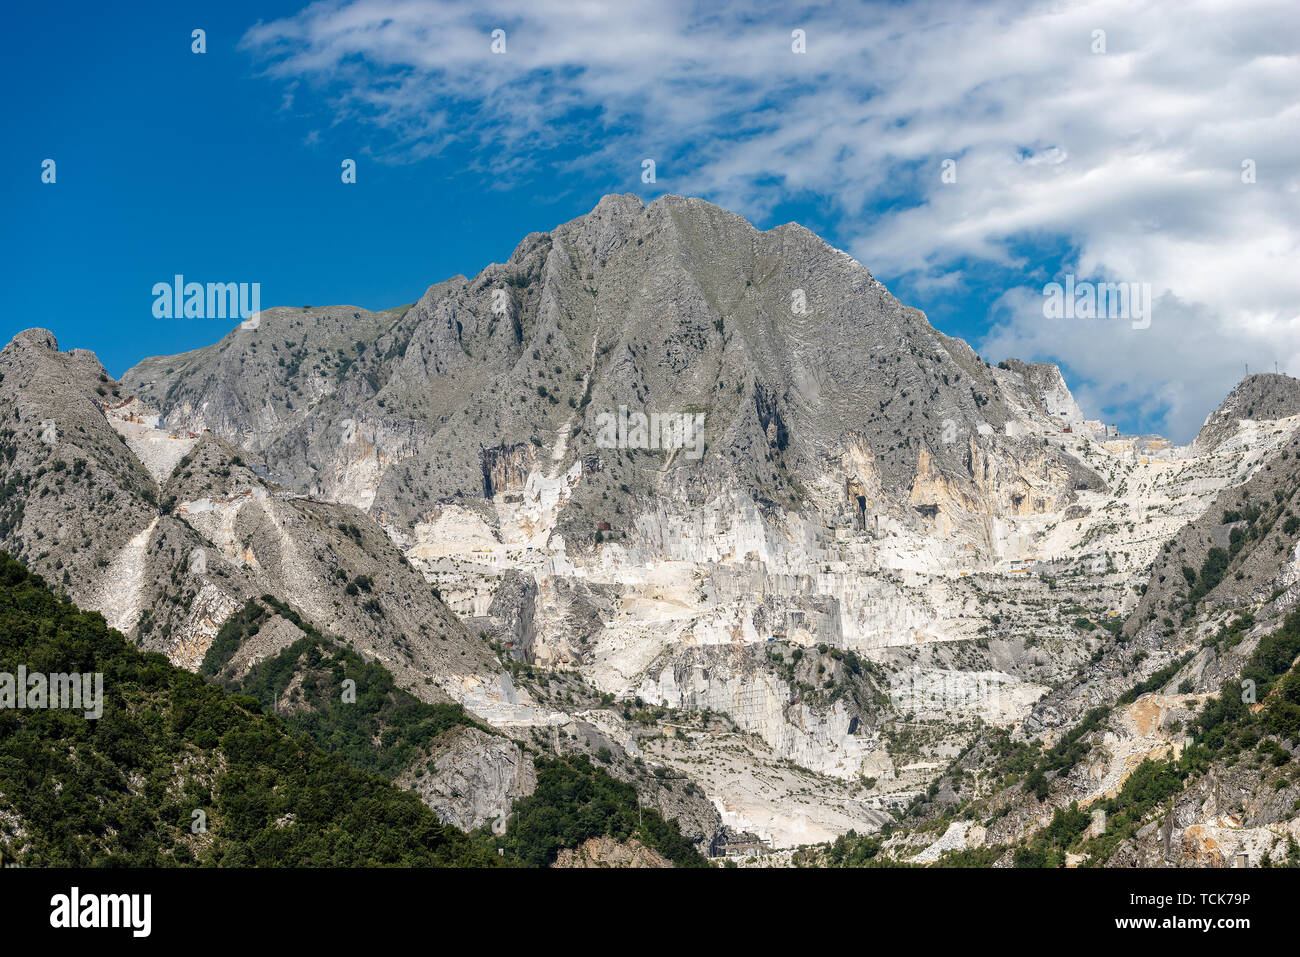 Alpi Apuane in Italia con il famoso marmo bianco di Carrara, Toscana, Europa Foto Stock